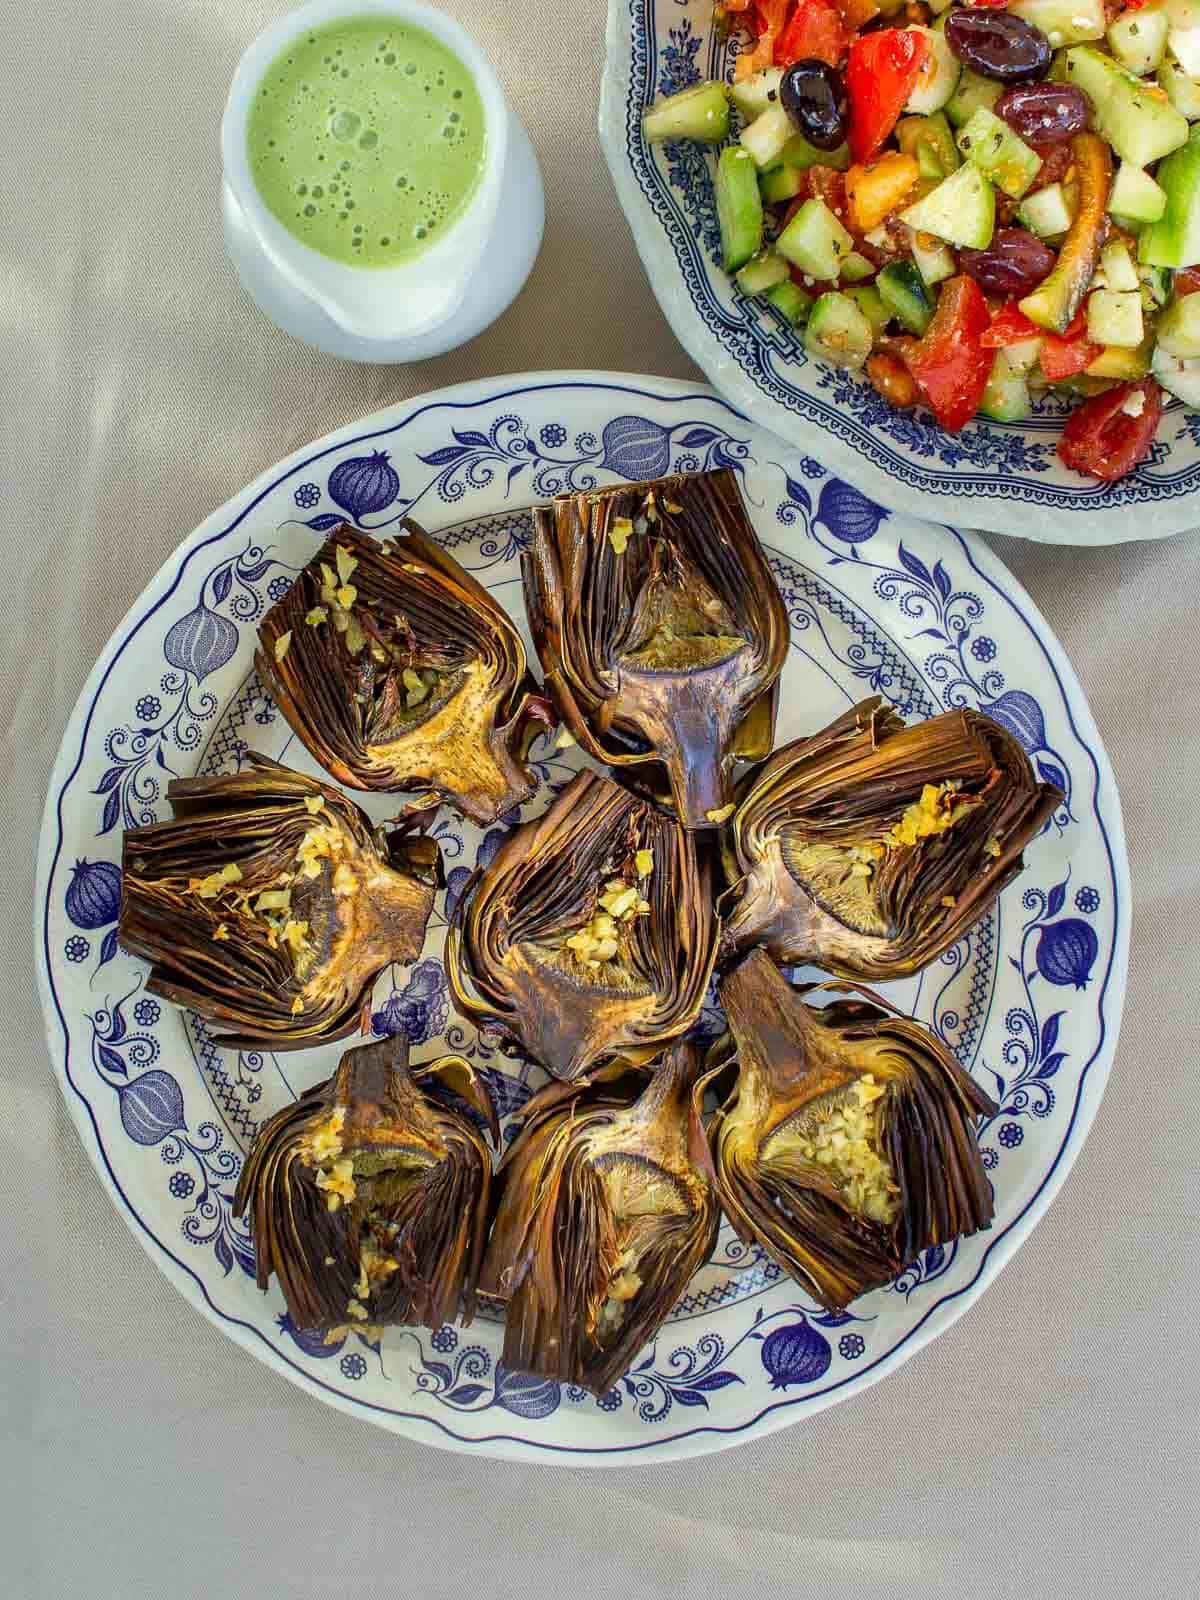 plato con alcachofas al horno junto a una jarrita con salsa verde y un plato con ensalada griega.